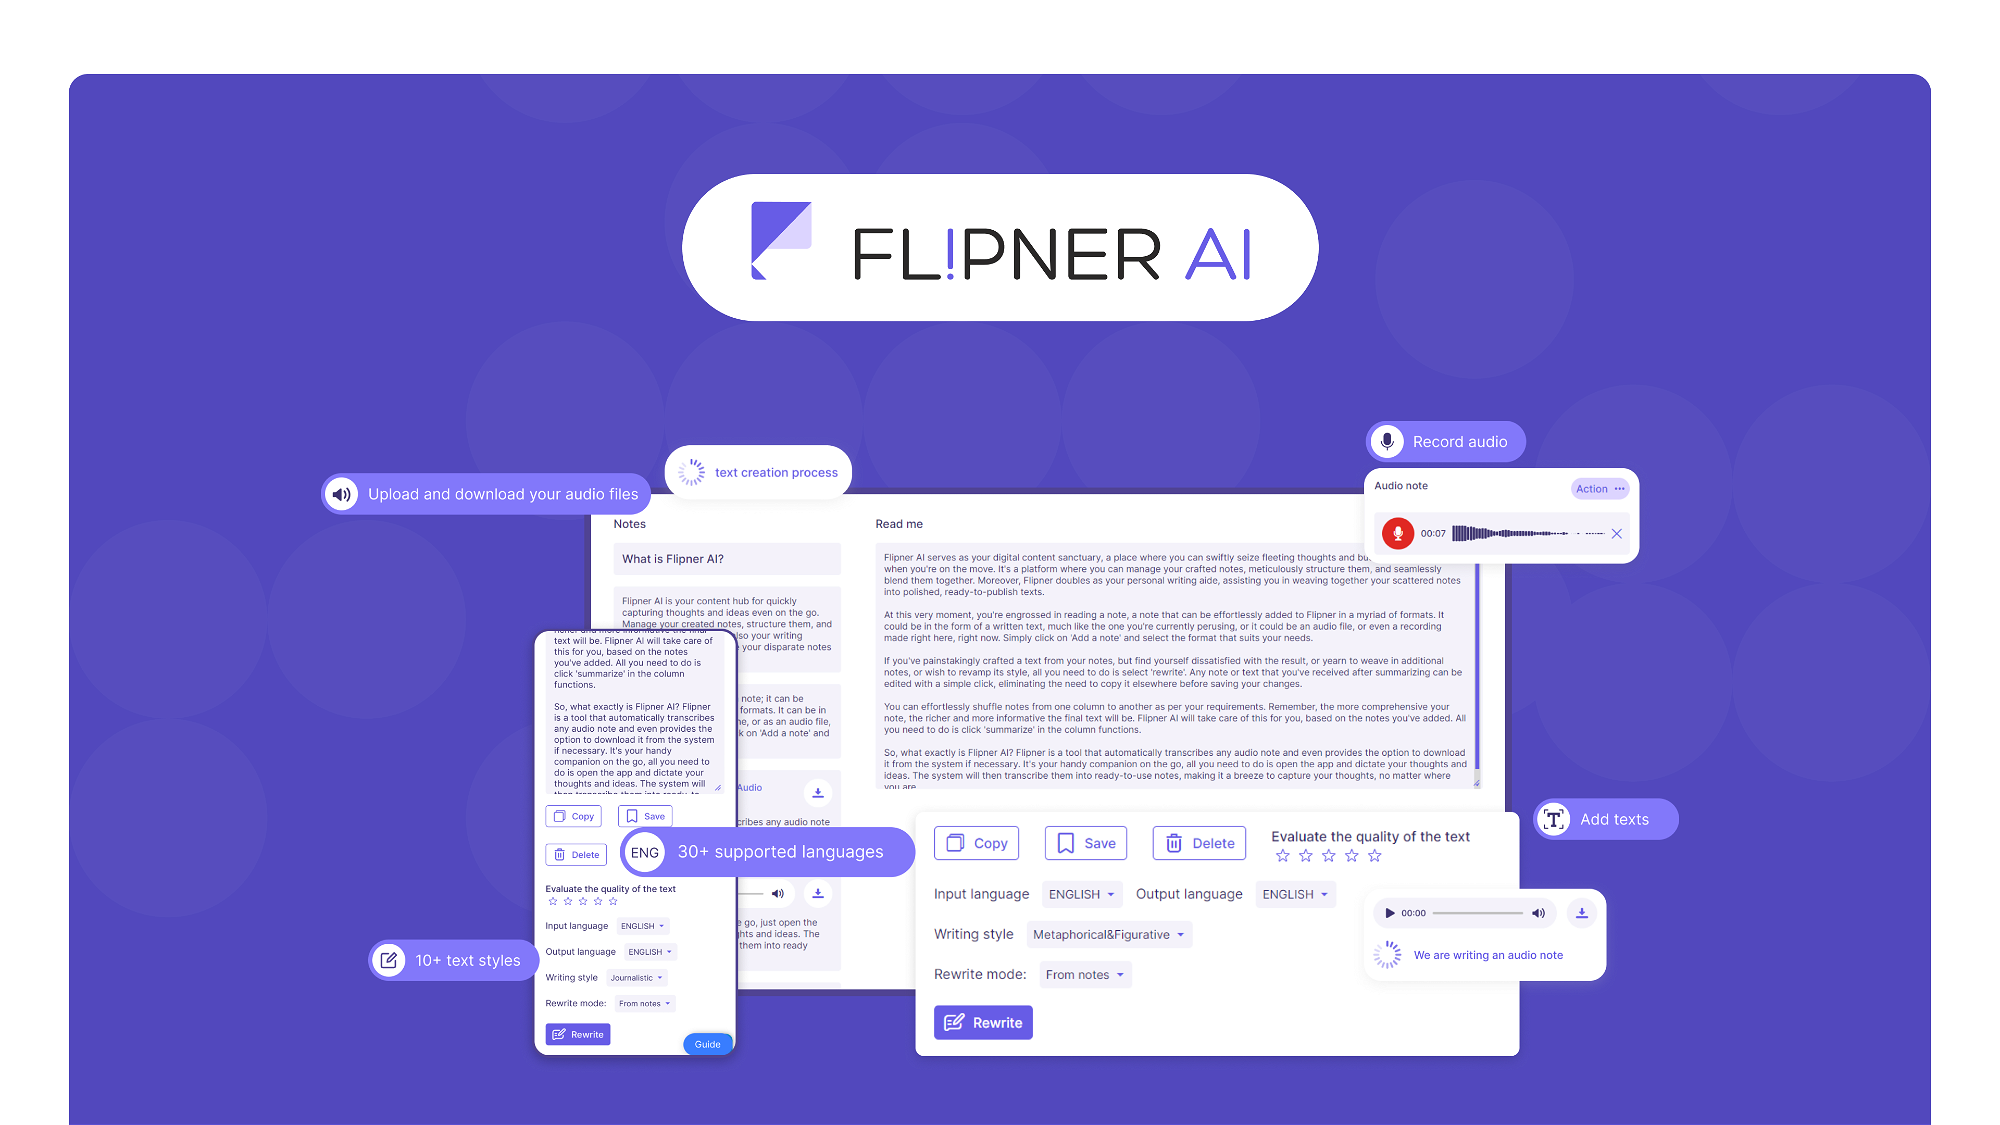 Flipner AI – LIFETIME Deals by appsumo